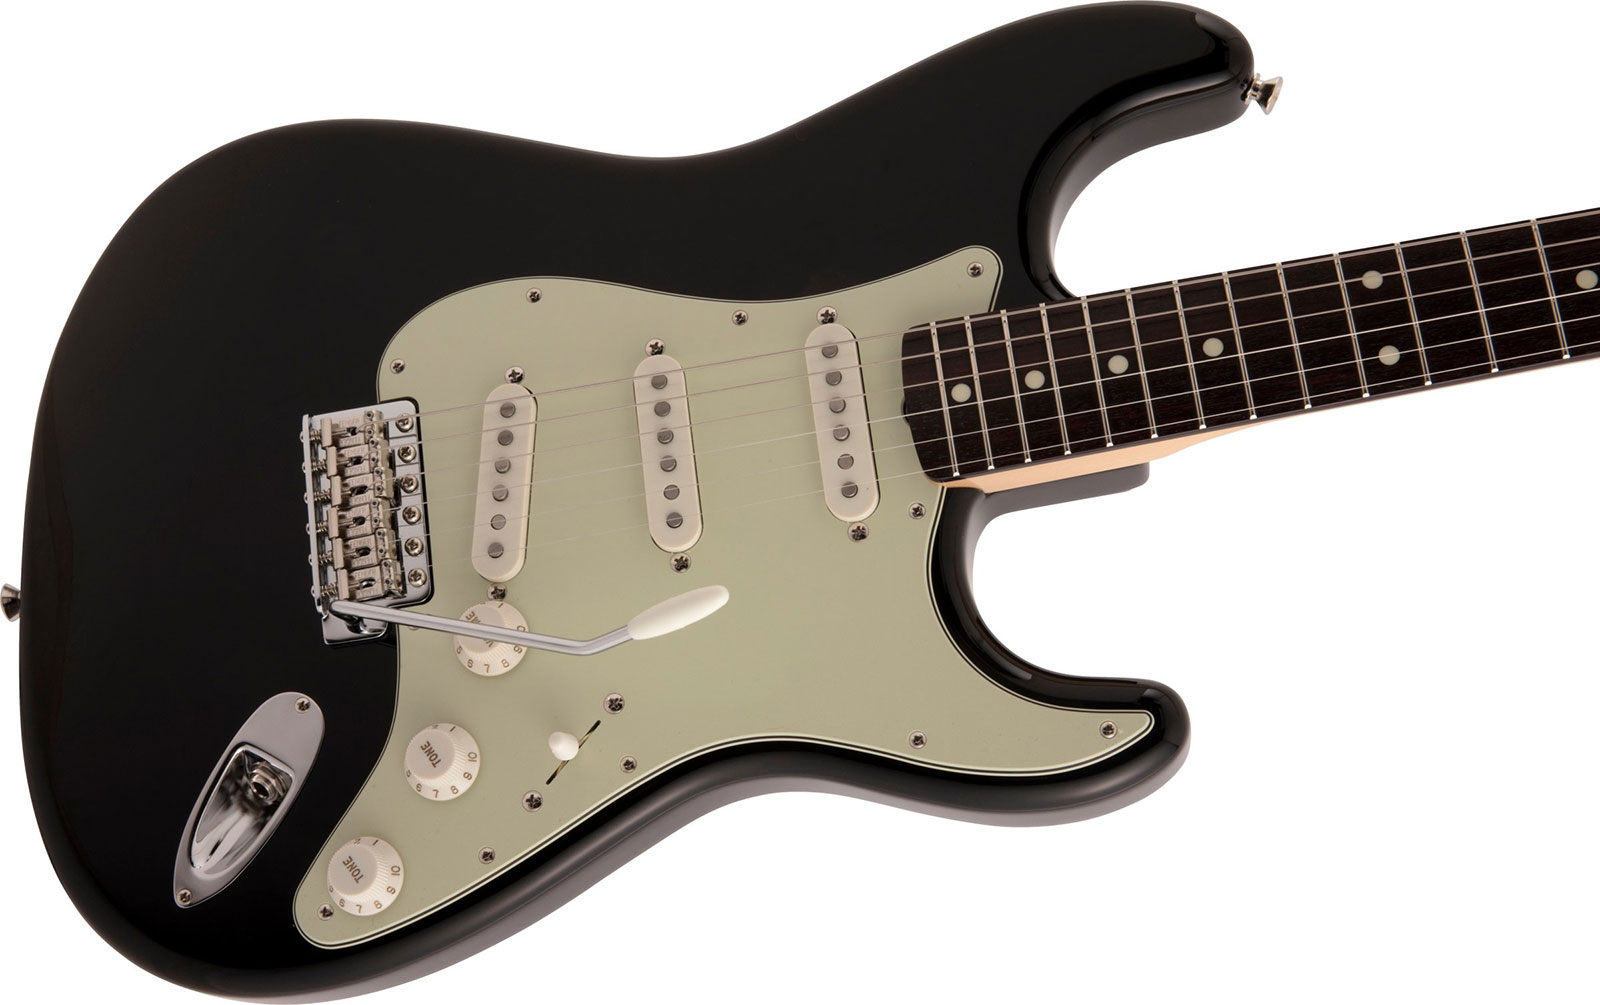 Fender Strat Traditional Ii 60s Mij Jap 3s Trem Rw - Black - Guitare Électrique Forme Str - Variation 2